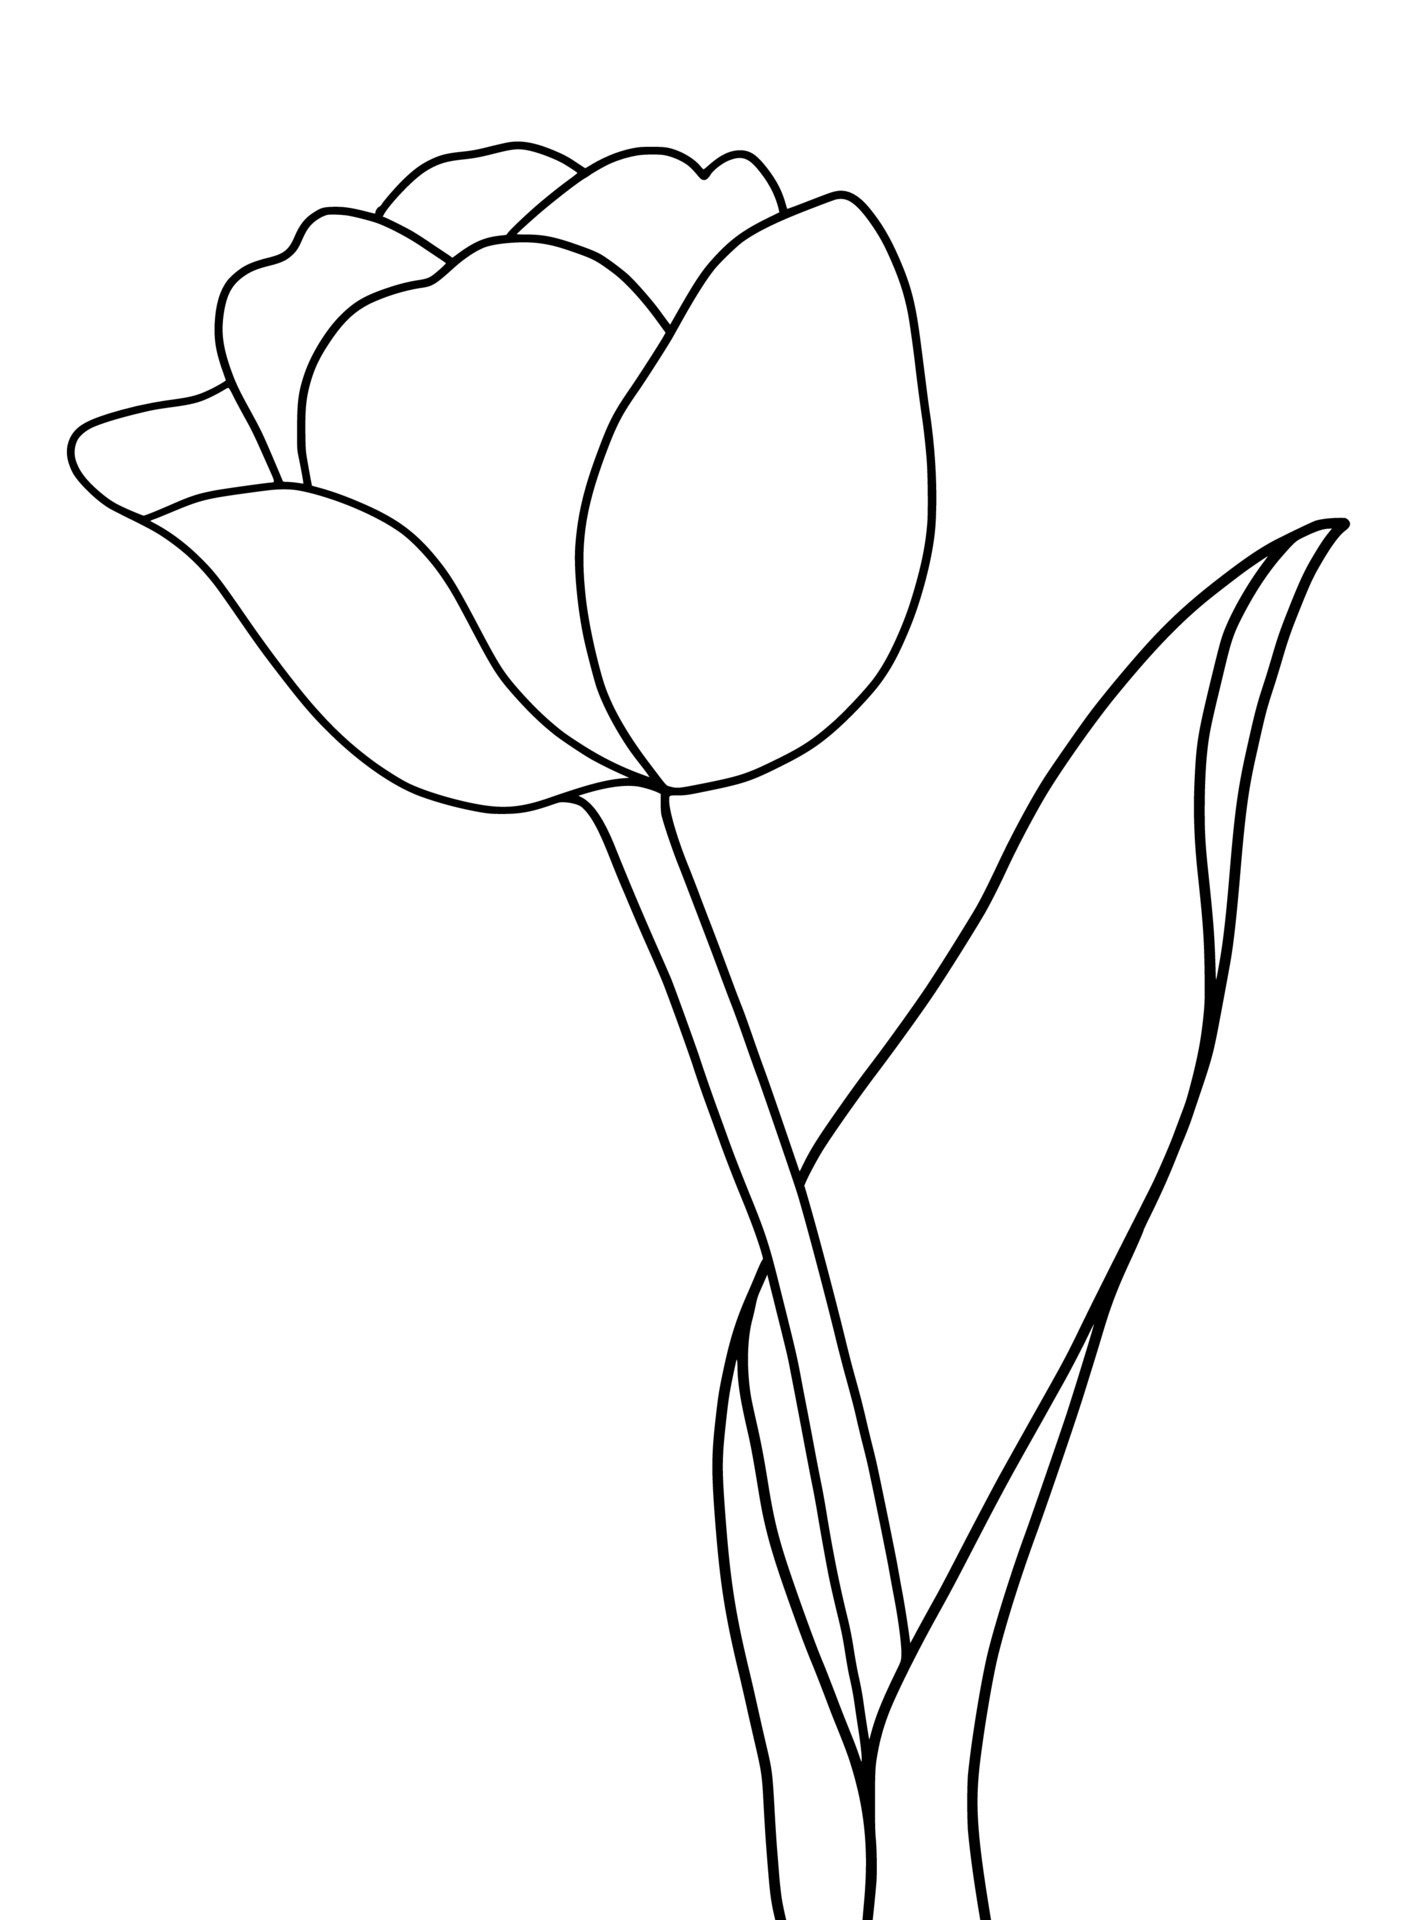 Outline tulip flower isolated on white background 22662272 Vector Art ...